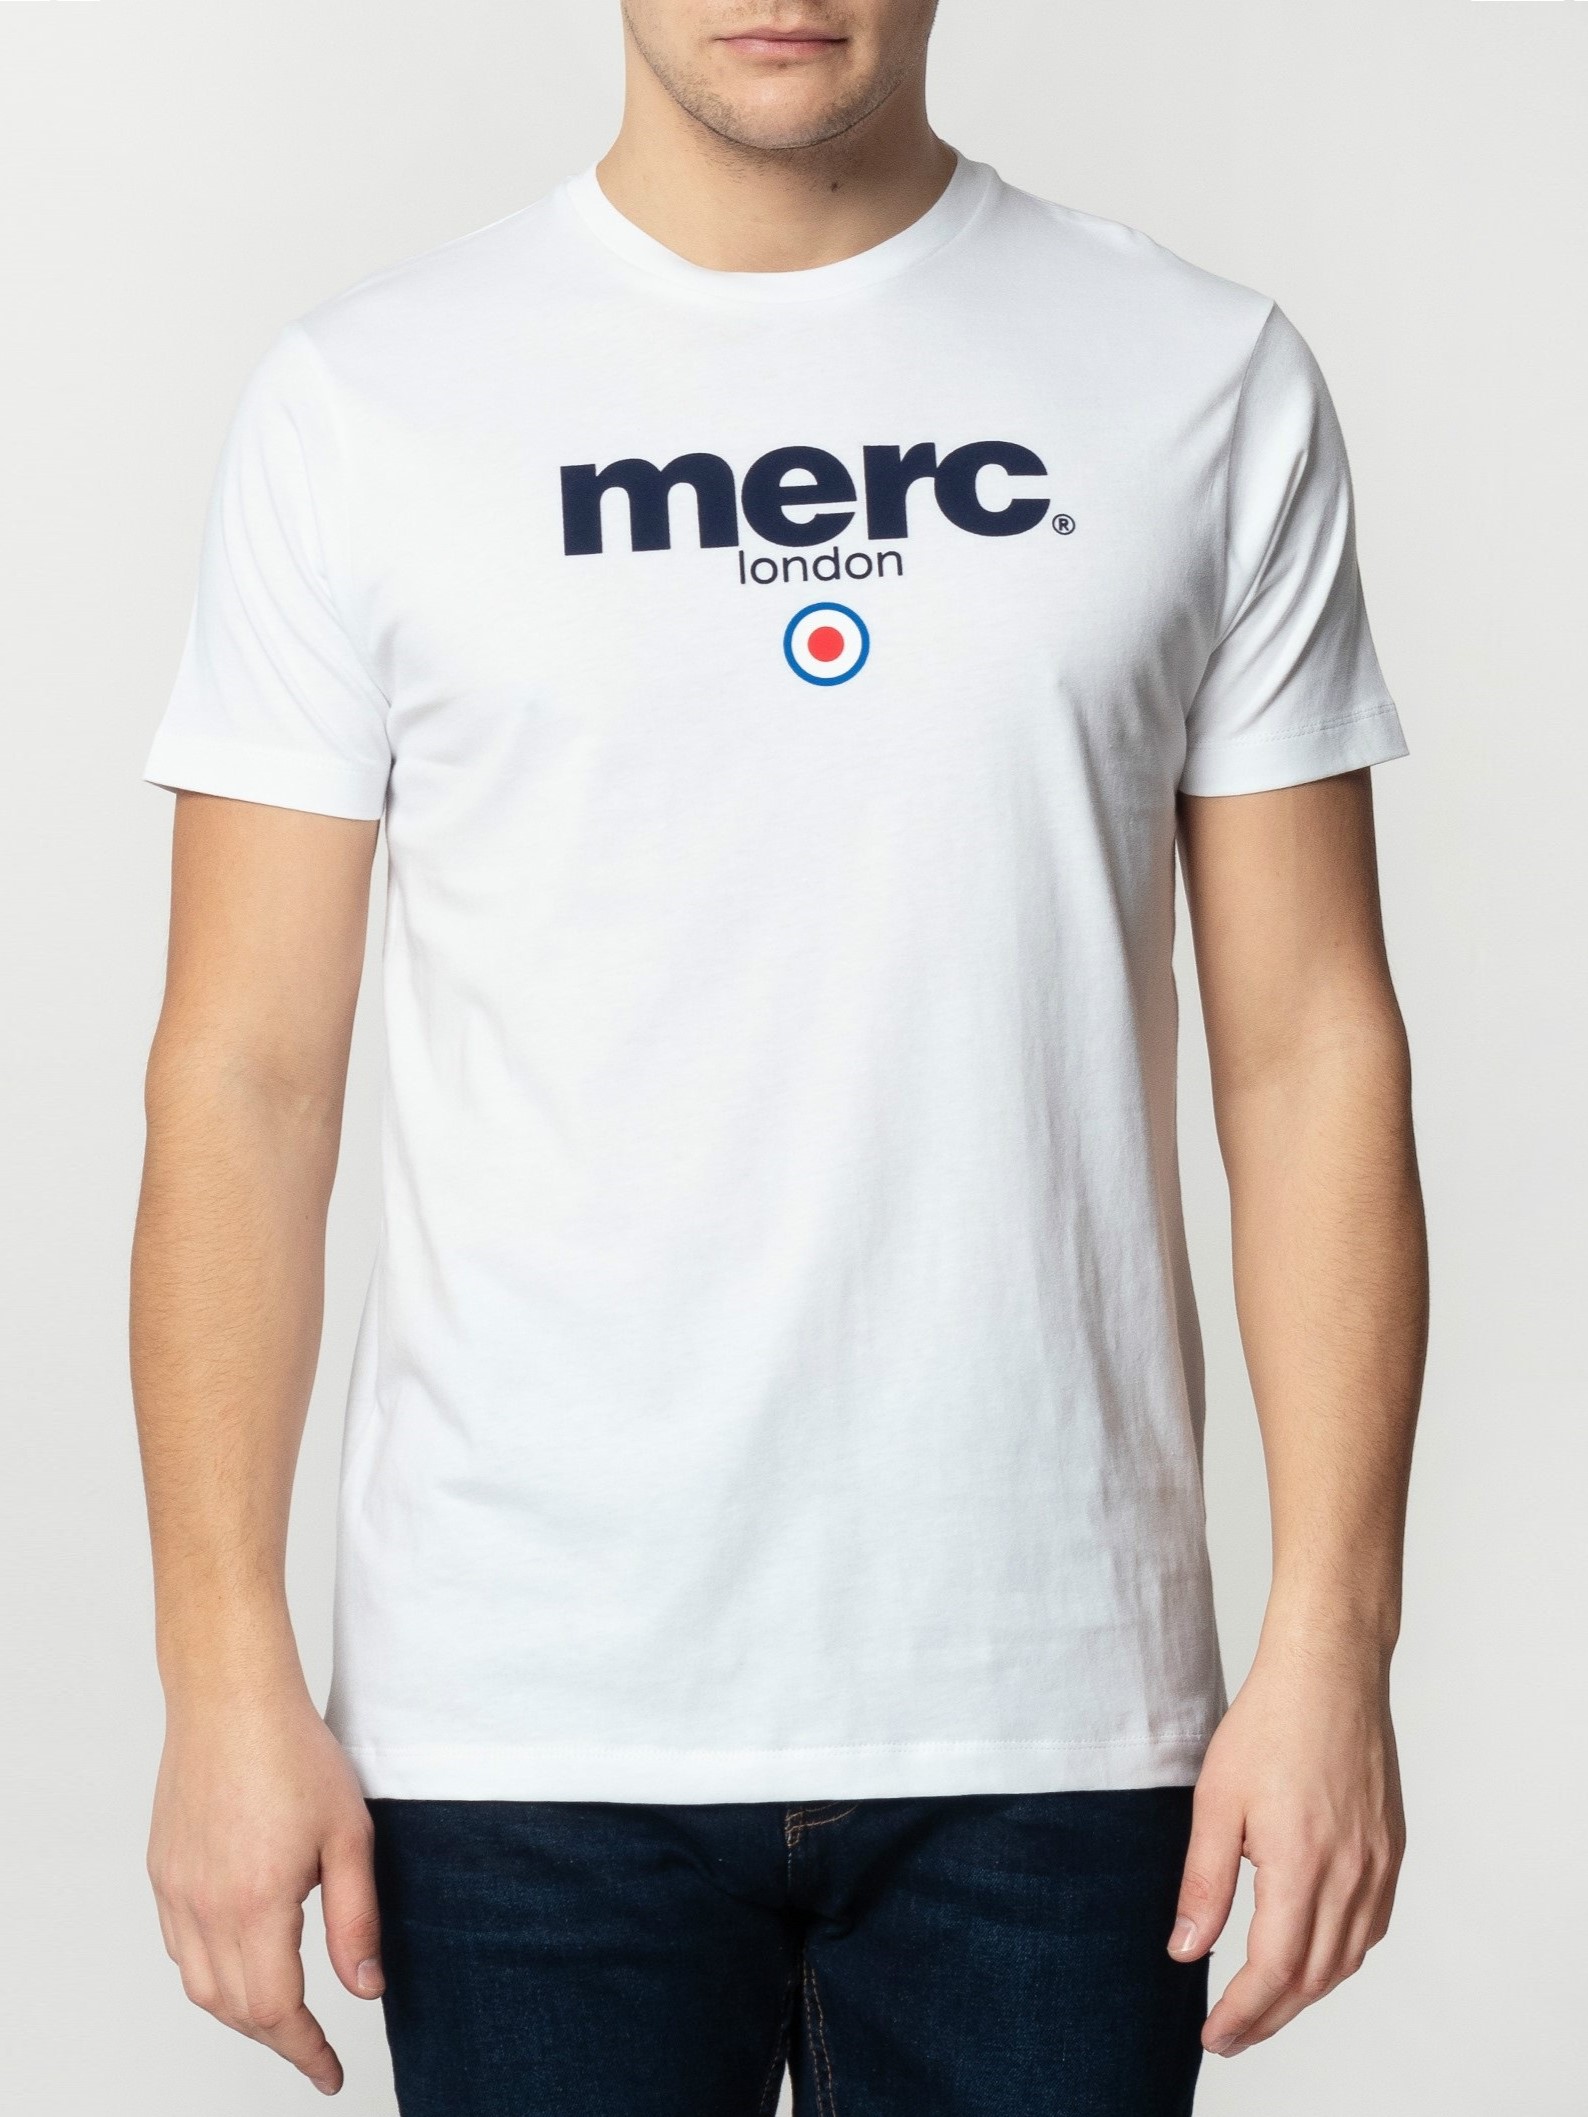 Мужская футболка с классическим логотипом Merc Brighton, white (белая), купить на официальном сайте